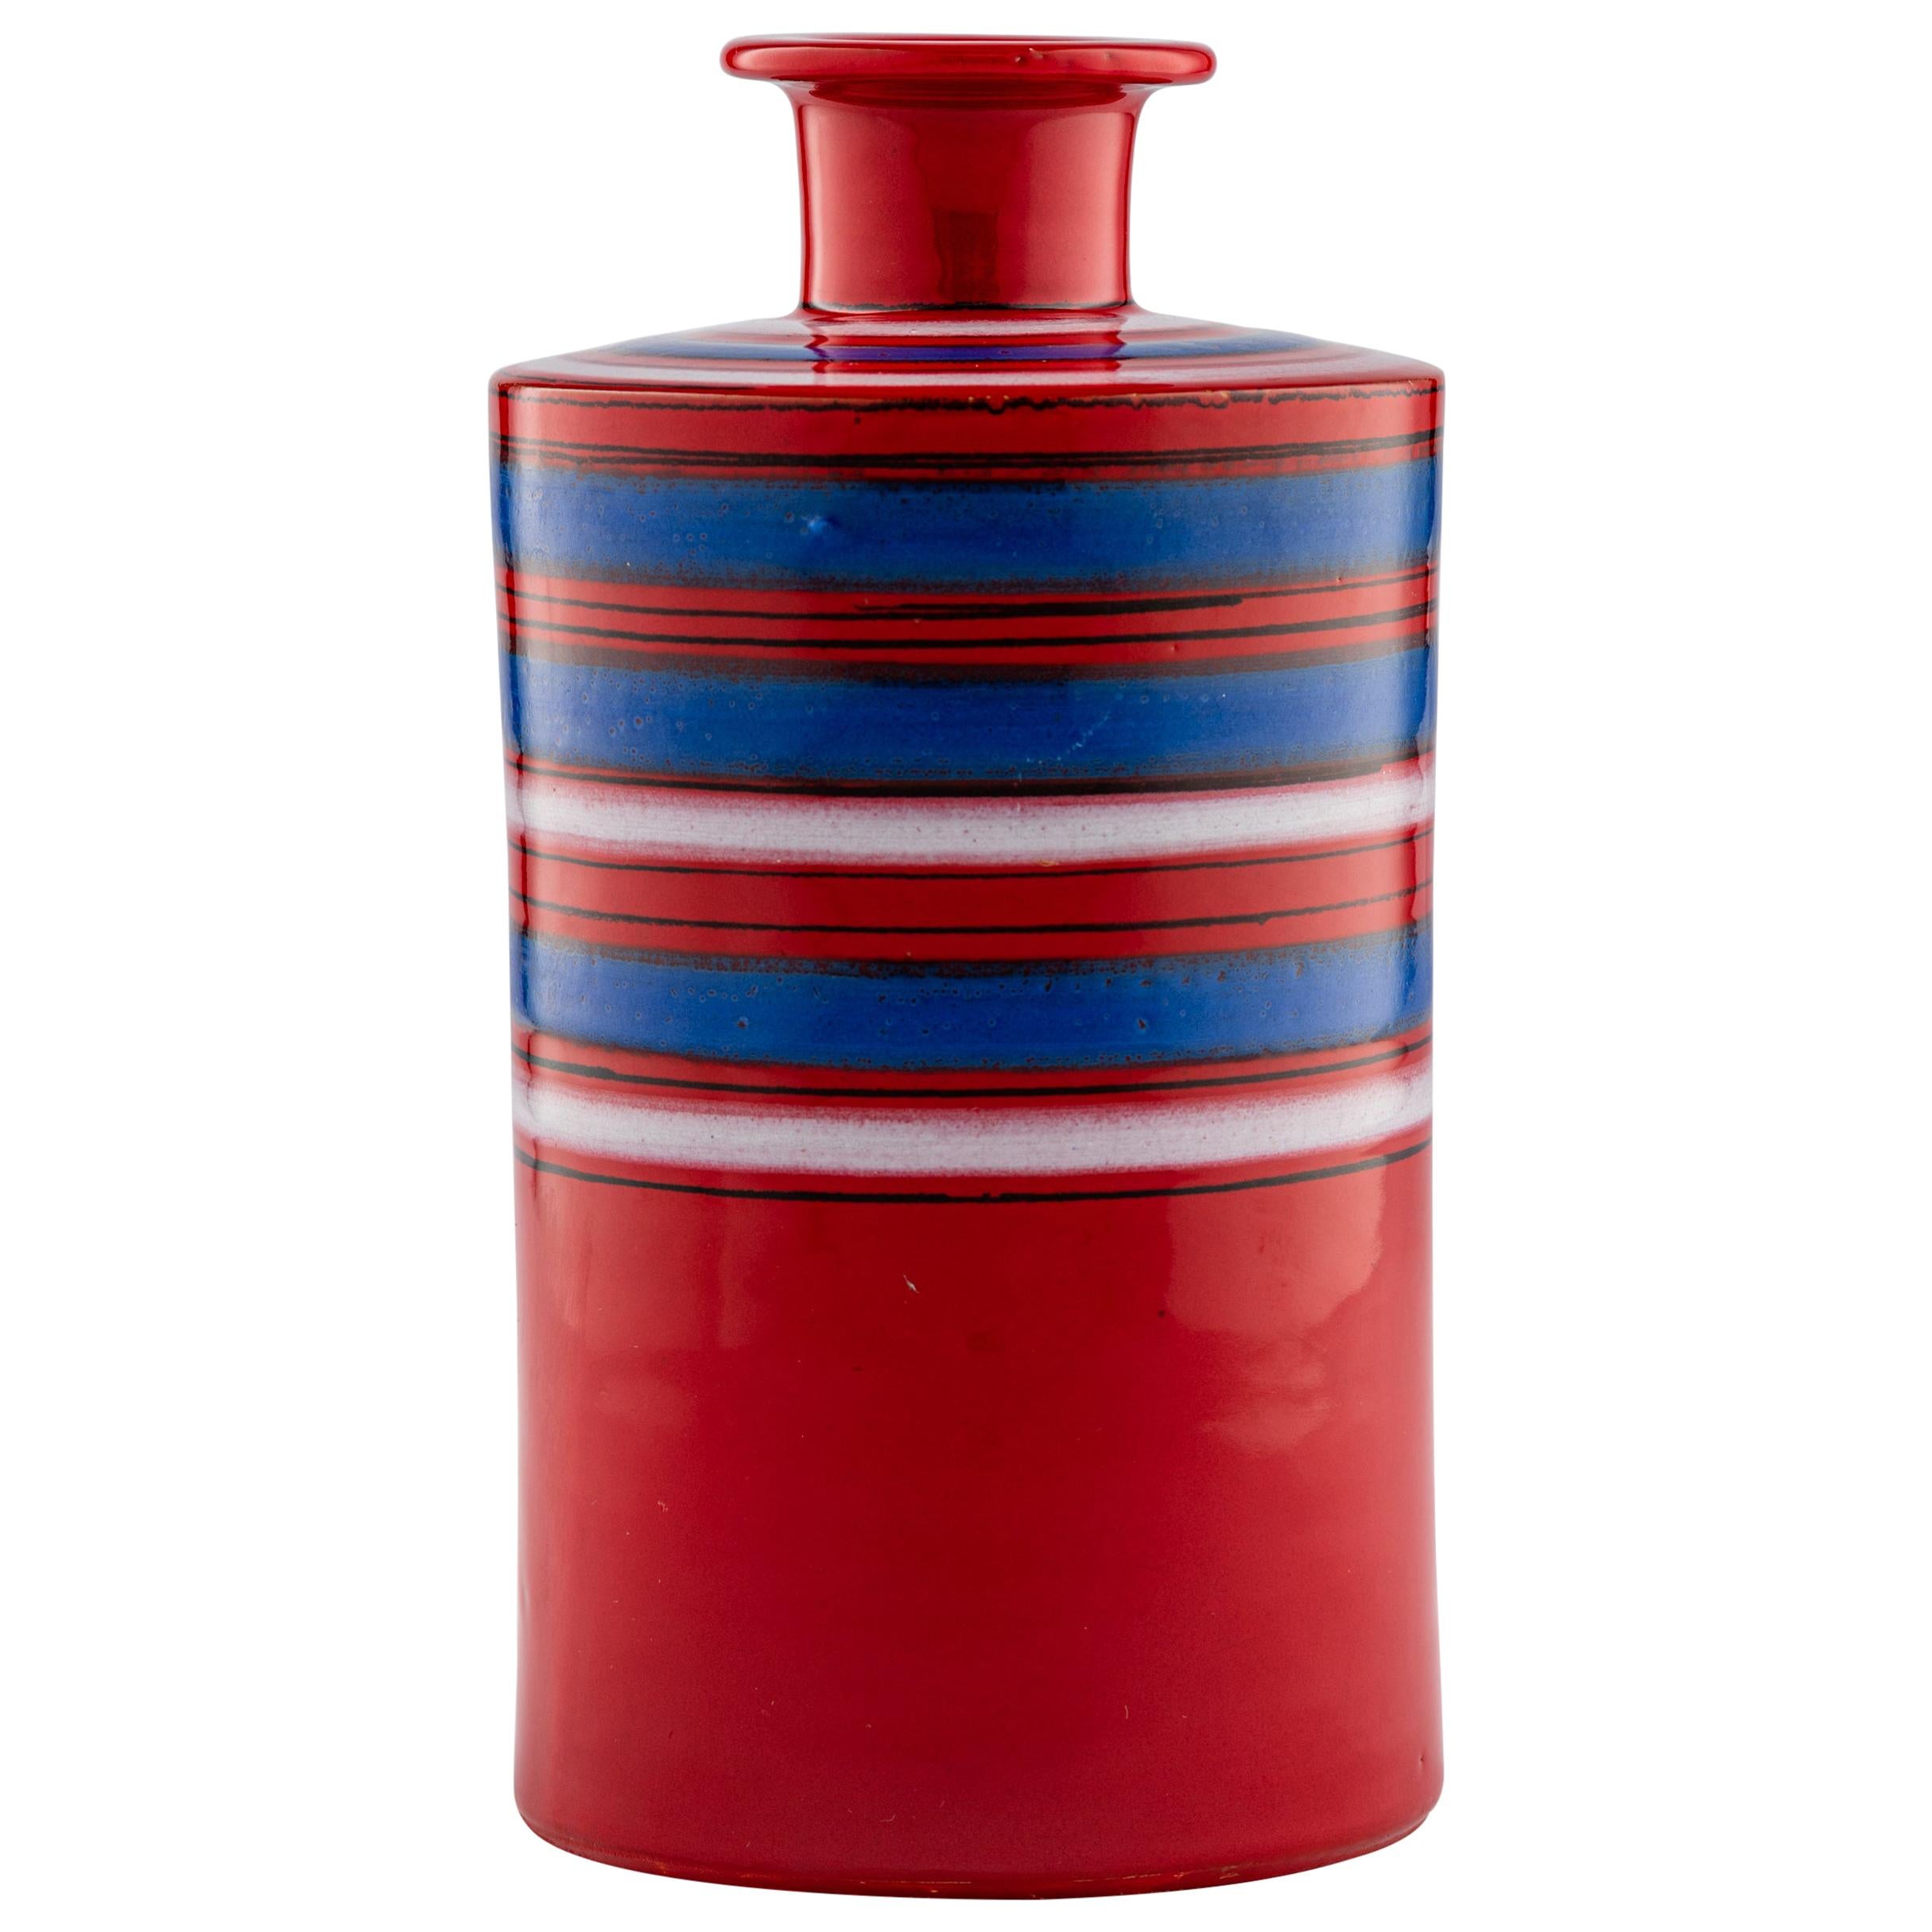 Bitossi Raymor Vase, Ceramic, Stripes, Red, Blue, White, Signed